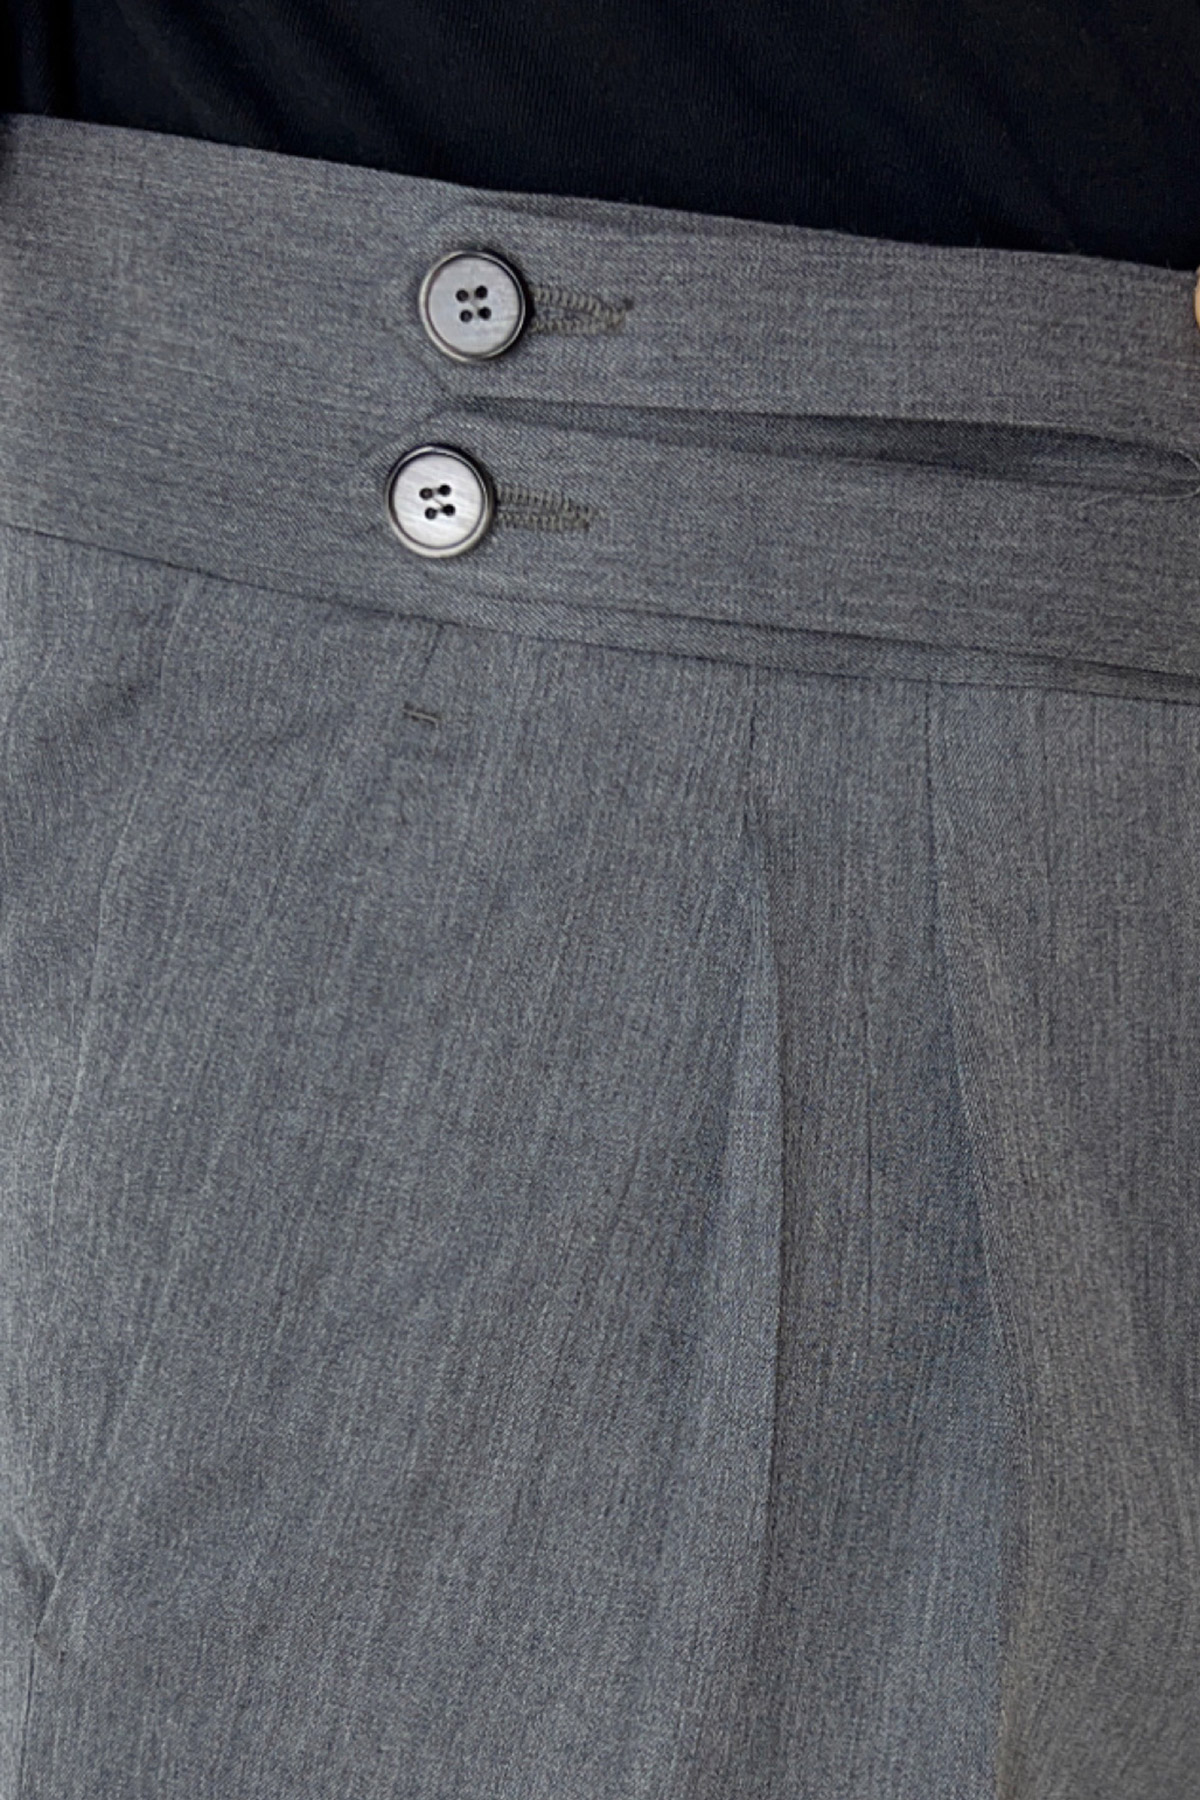 Pantalone uomo grigio medio vita alta modello biforcato in fresco lana super 130's Holland & Sherry